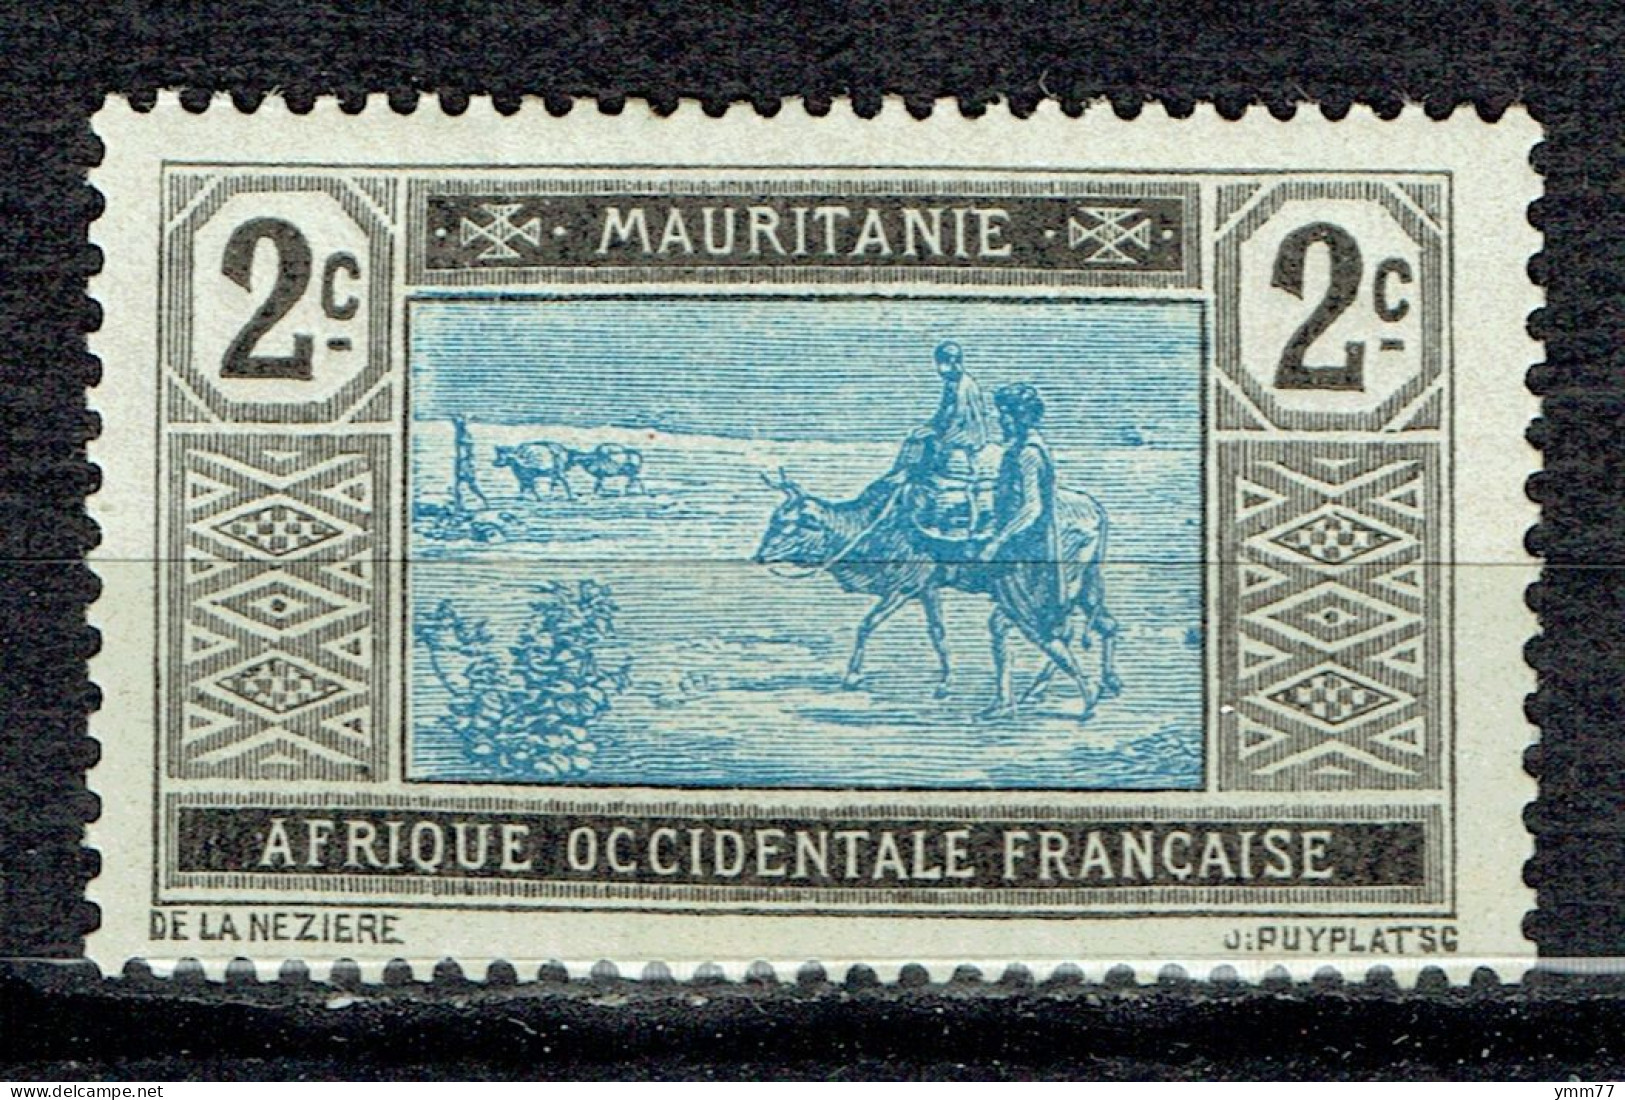 Série Courante : Paysan Sur Son Bœuf - Unused Stamps